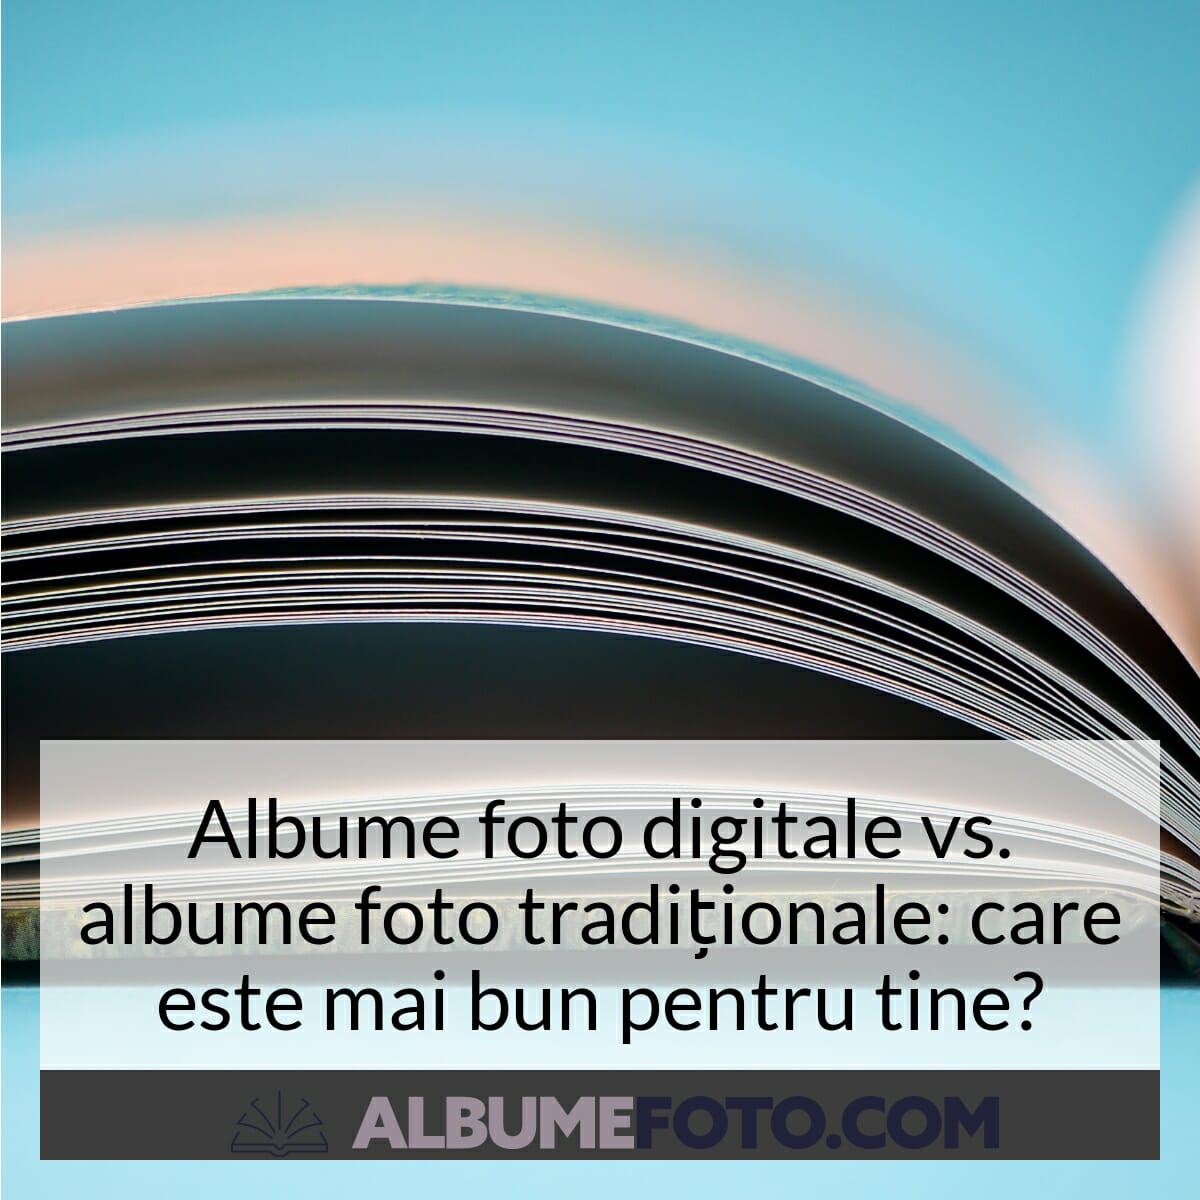 Album foto digital vs album foto traditional